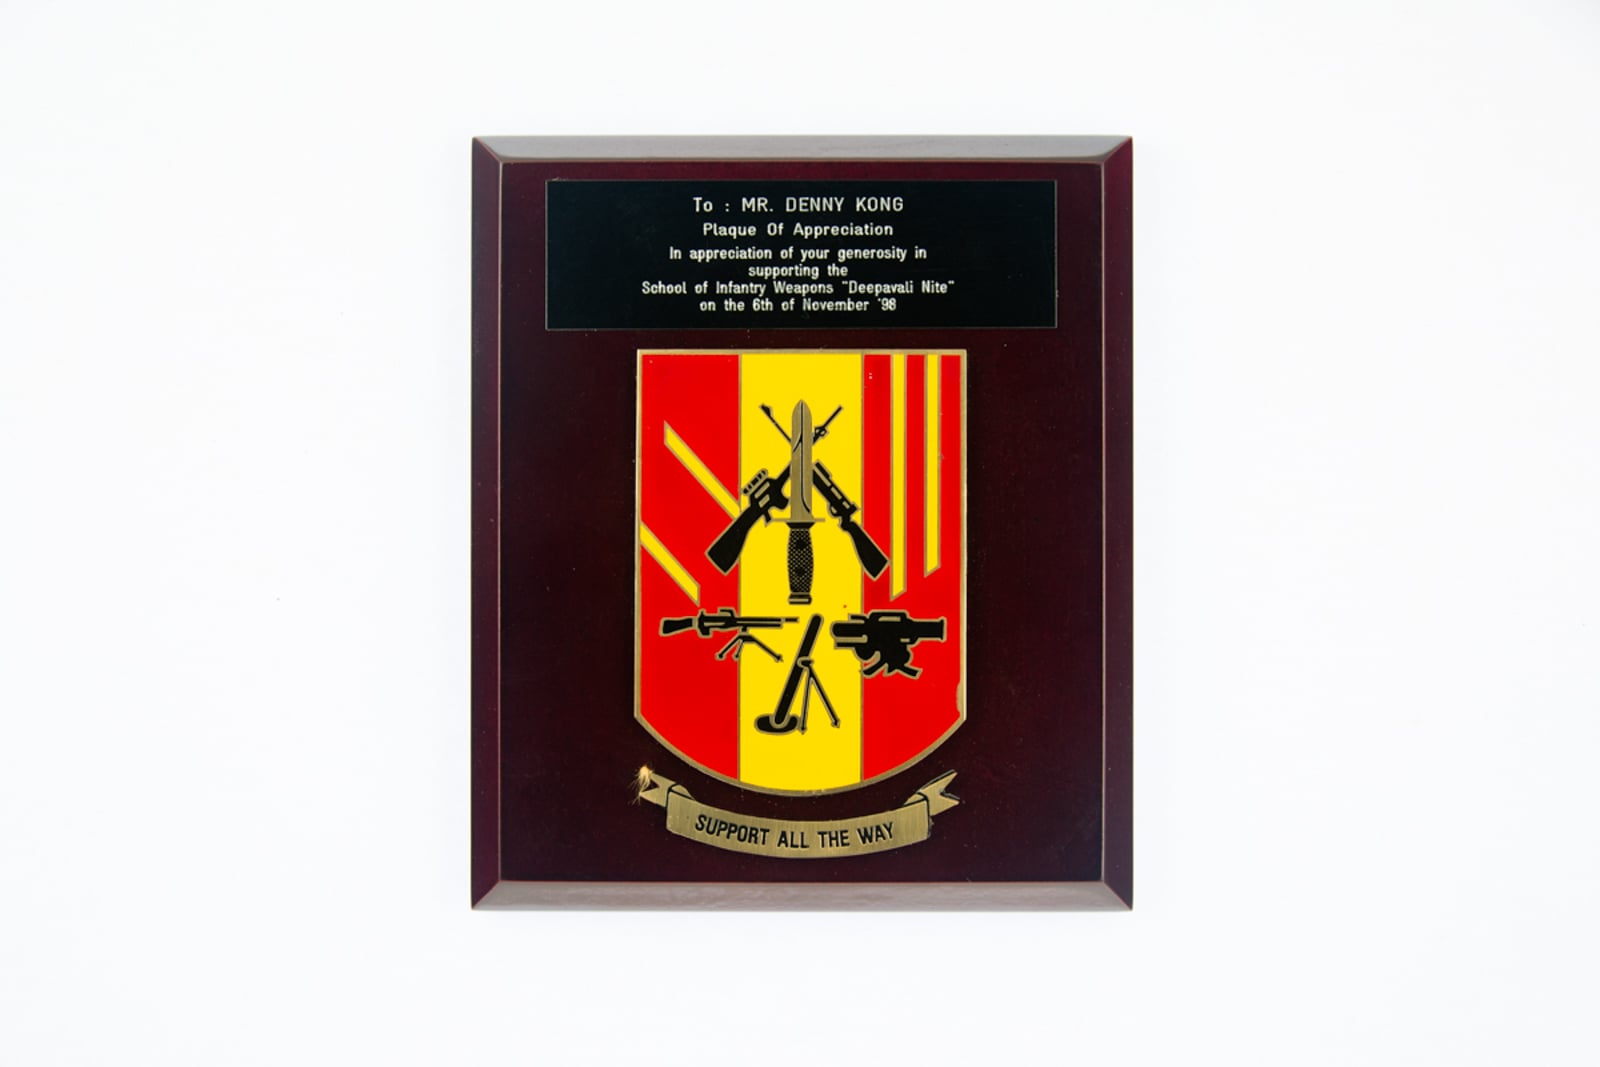 School of Infantry Weapons "Deepavali Nite" Plaque 1998